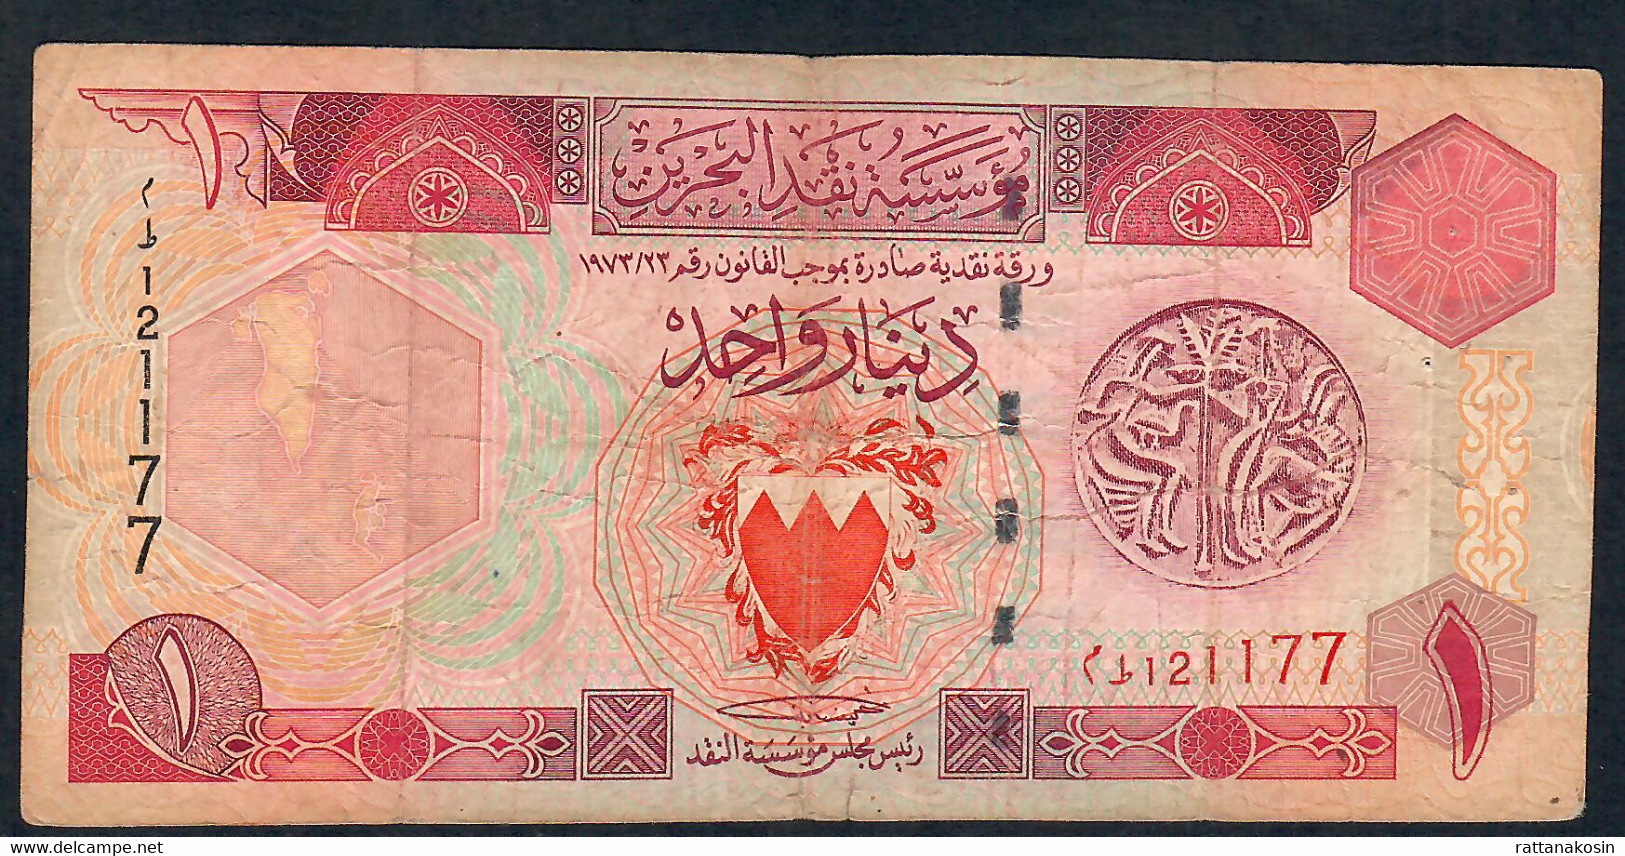 BAHRAIN P19b 1 DINAR 1973  FINE  6  P.h. - Bahrain